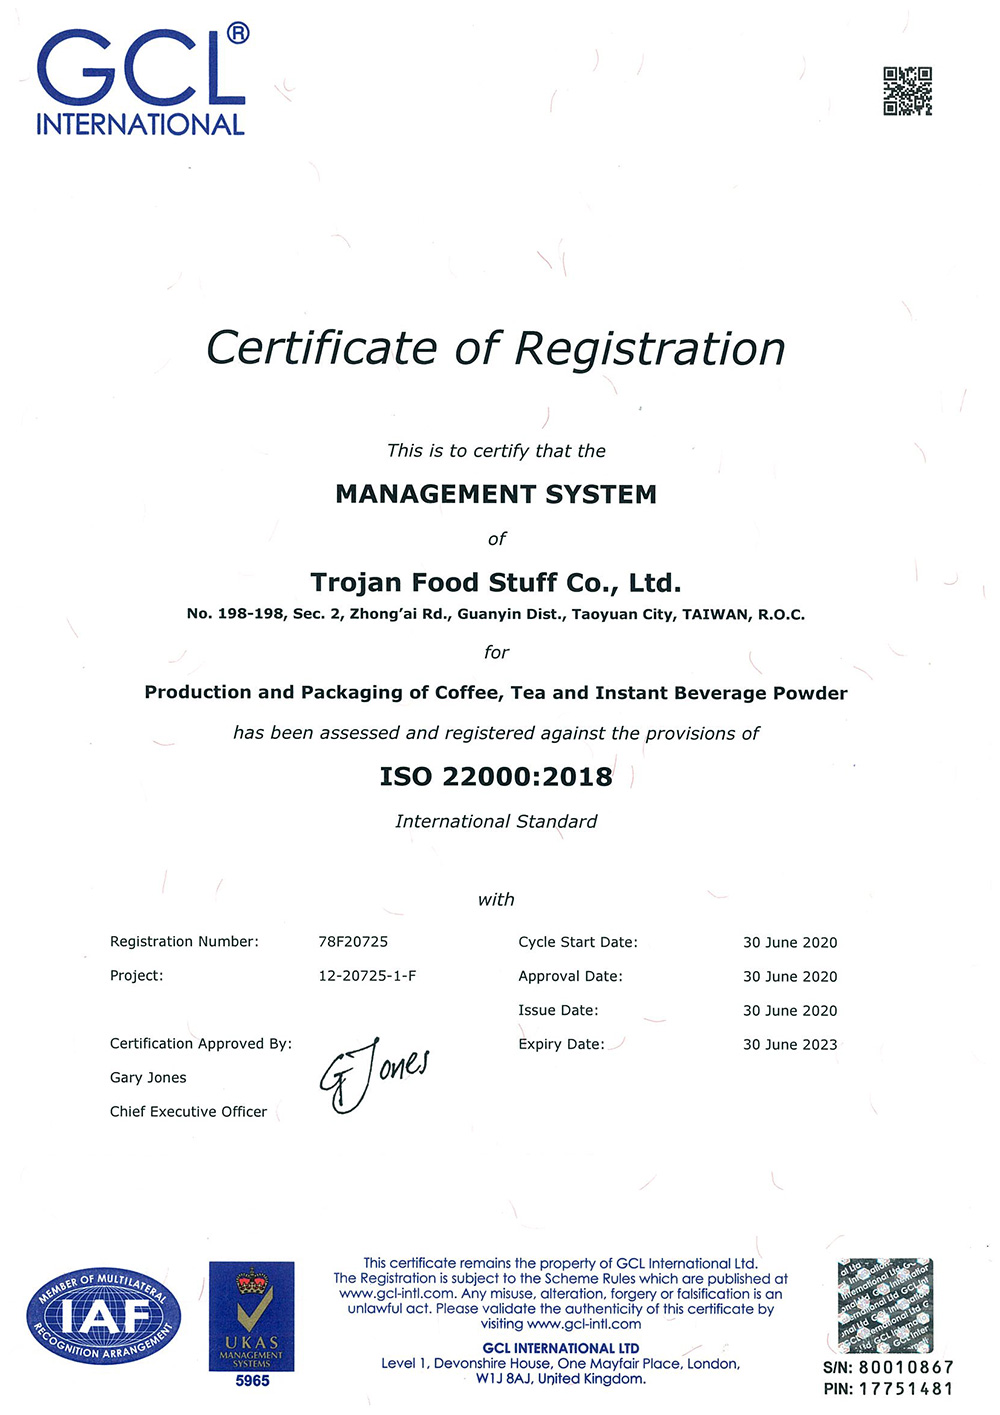 트로이 목마는 2019년에 ISO-22000 인증을 획득했습니다.